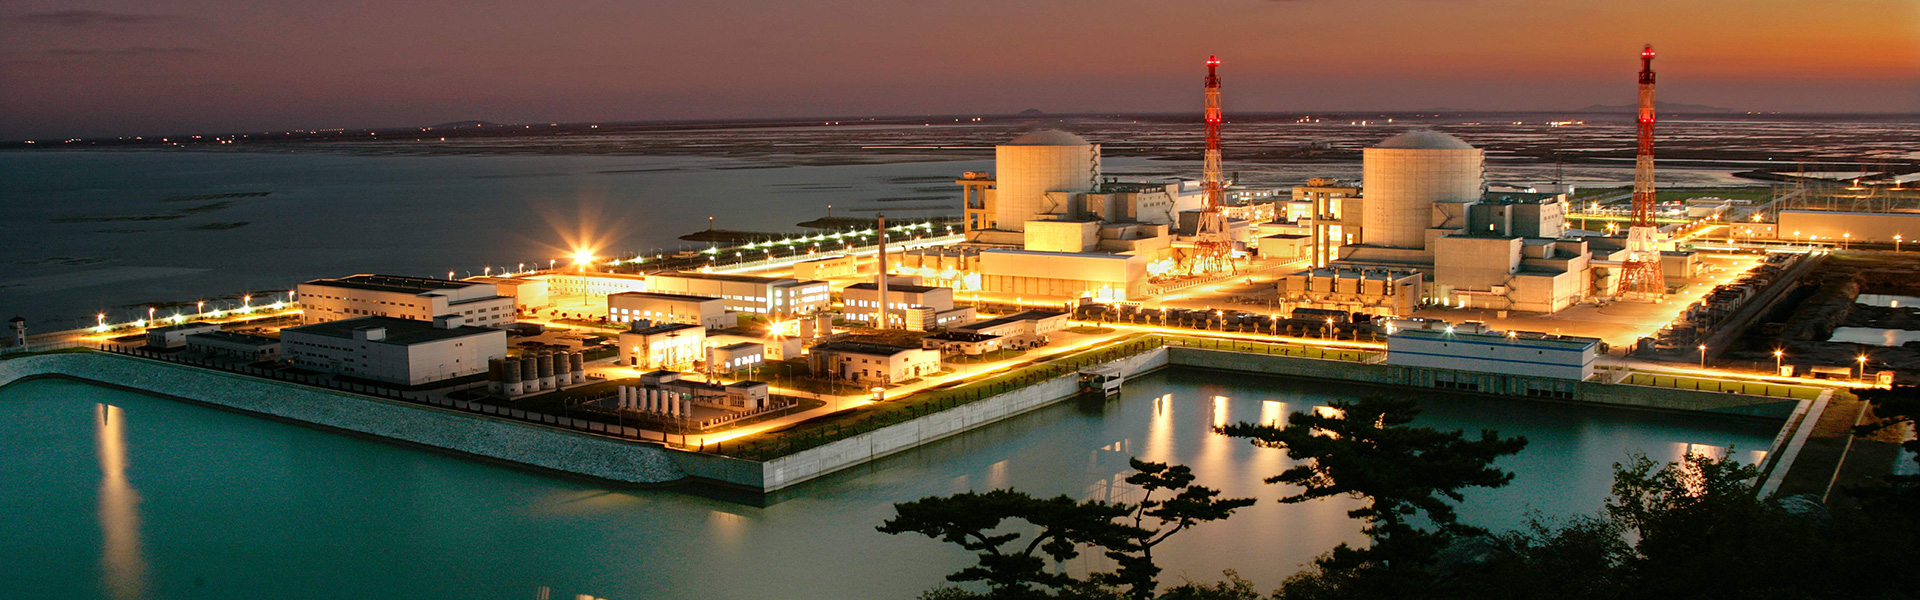 田湾核电站全景夜景（吕钢维摄影）